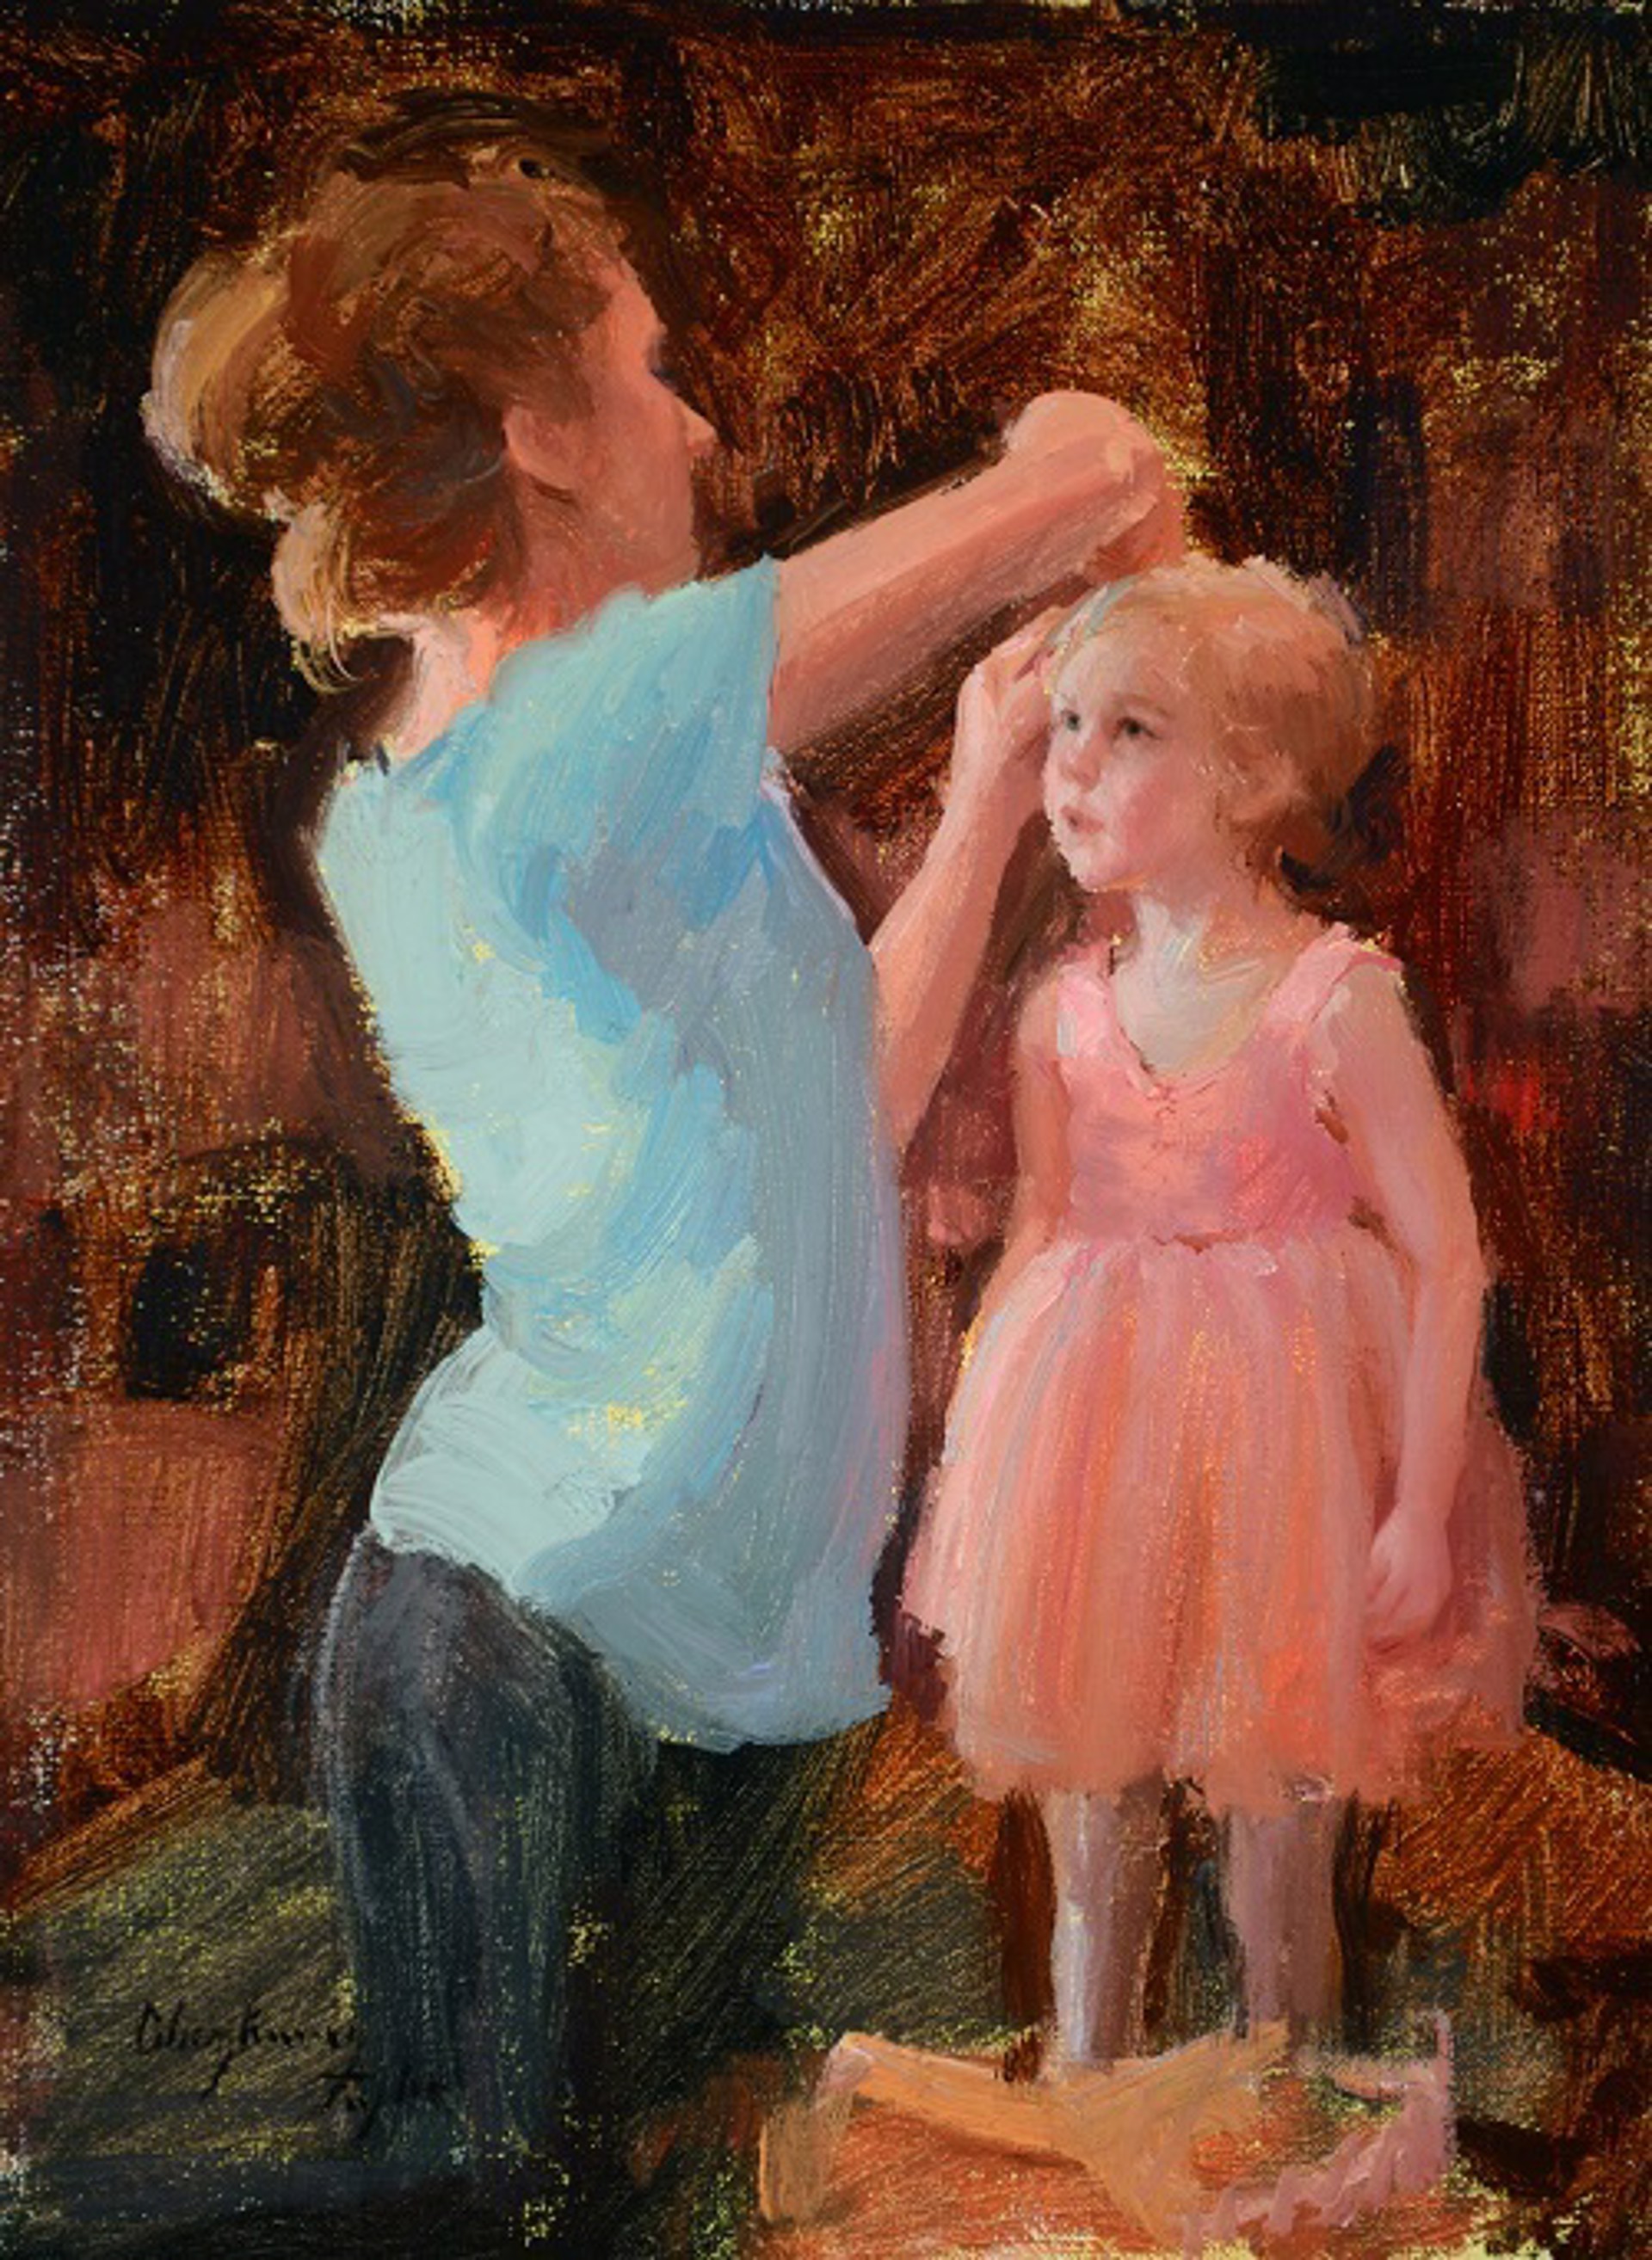 Becoming a Ballerina by Marci Oleszkiewicz